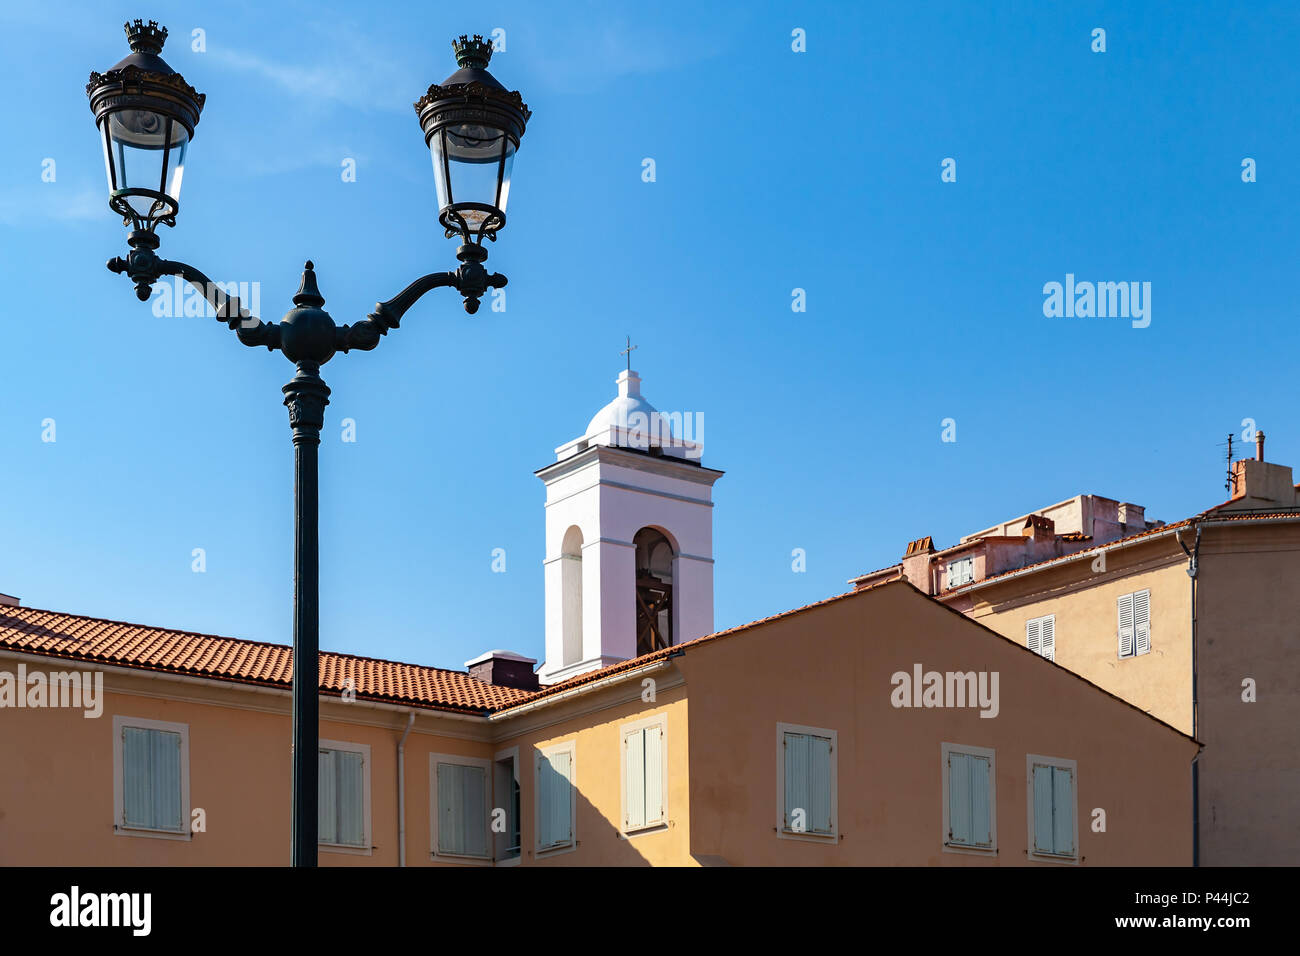 Vue sur la ville d'Ajaccio avec lampe de rue et dome de Eglise St Erasme. L'île de Corse, France Banque D'Images